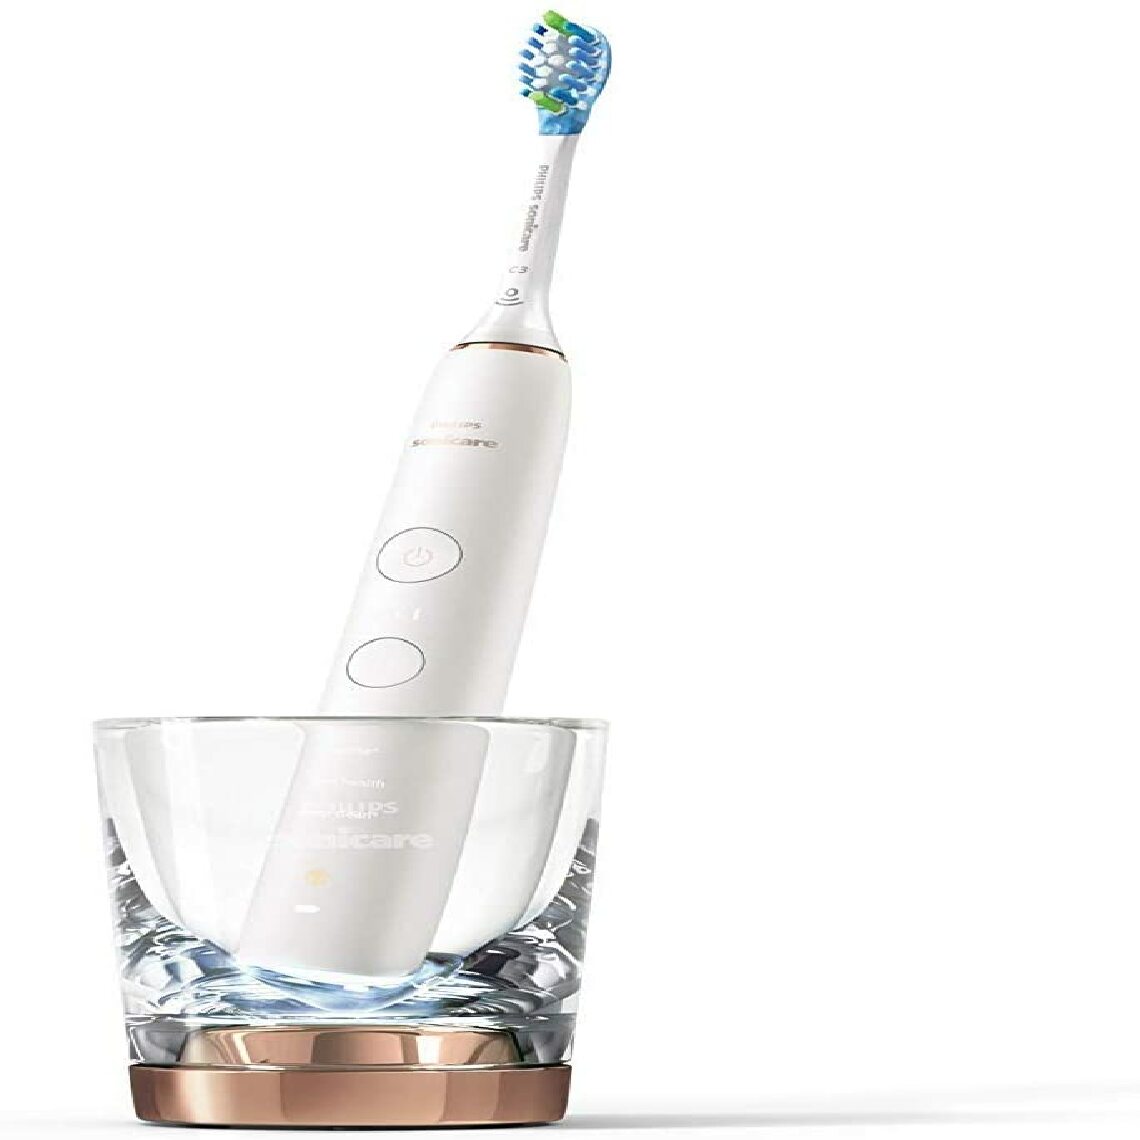 Philips - brosse à dents électrique rechargeable connectée Diamond Clean Smart rose or blanc - Brosse à dents électrique